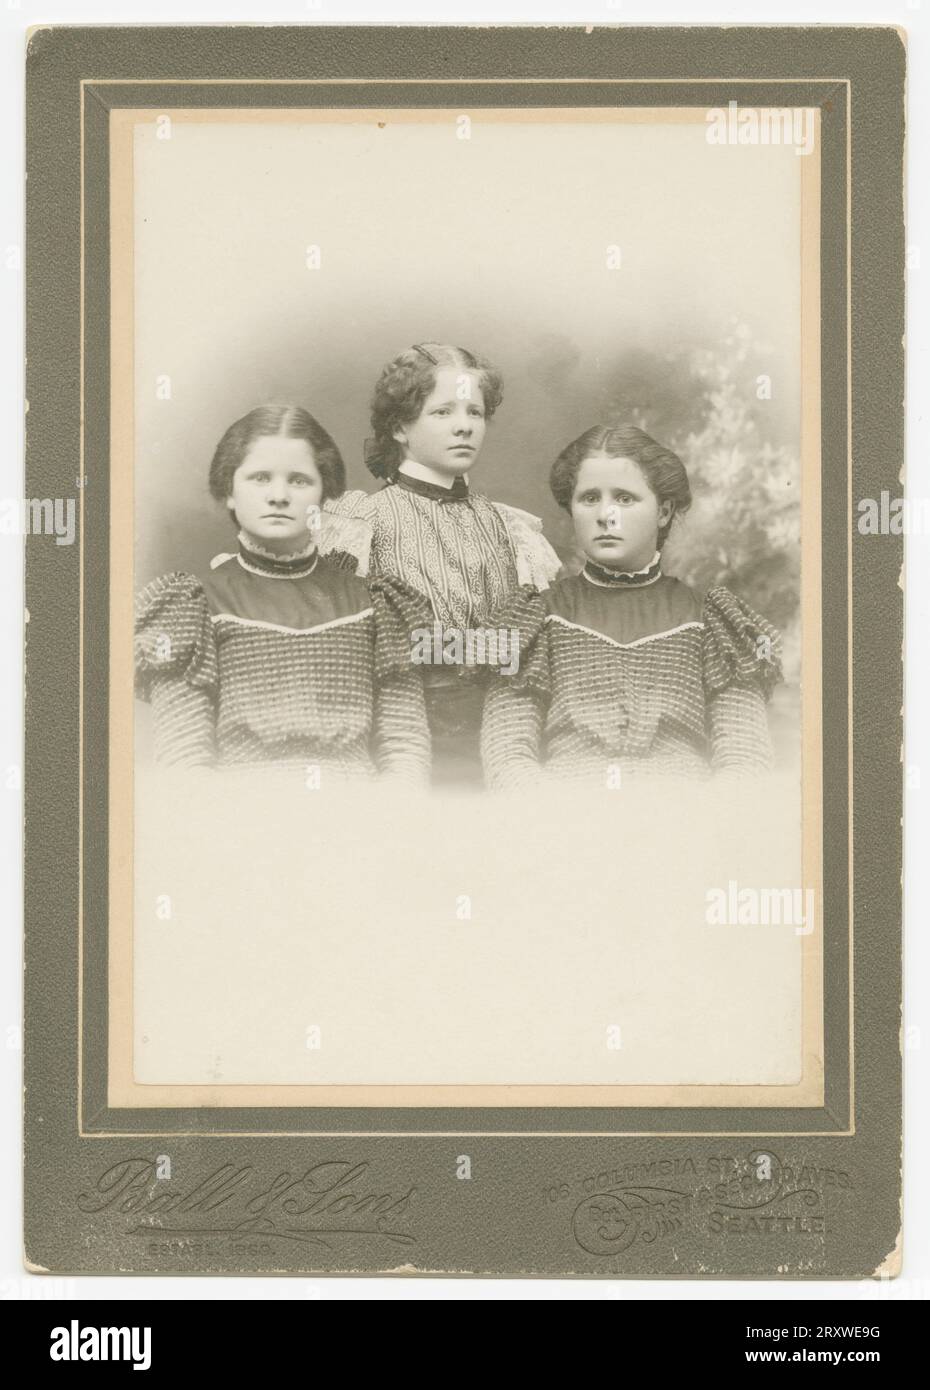 Ein Schwarzweißfoto von drei Mädchen, die im Ball & Sons Studio in Seattle, WA, fotografiert wurden. Das Foto befindet sich auf einer dunklen Schrankkarte, die mit dem Ball & Sons-Logo bedruckt ist, und befindet sich an der Unterseite der Vorderseite. Das Trio wird von der Hüfte nach oben fotografiert, zwei Mädchen sitzen und das dritte steht zwischen und hinter den anderen beiden. Die beiden sitzenden Mädchen tragen identische dunkelfarbige Kleider und das dritte Mädchen trägt ein helleres Kleid mit Spitzendekorationen auf dem Ärmel. Die Mädchen haben alle dunkle Haare, die zurückgezogen wurden. Es gibt eine Inschrift in Bleistift o Stockfoto